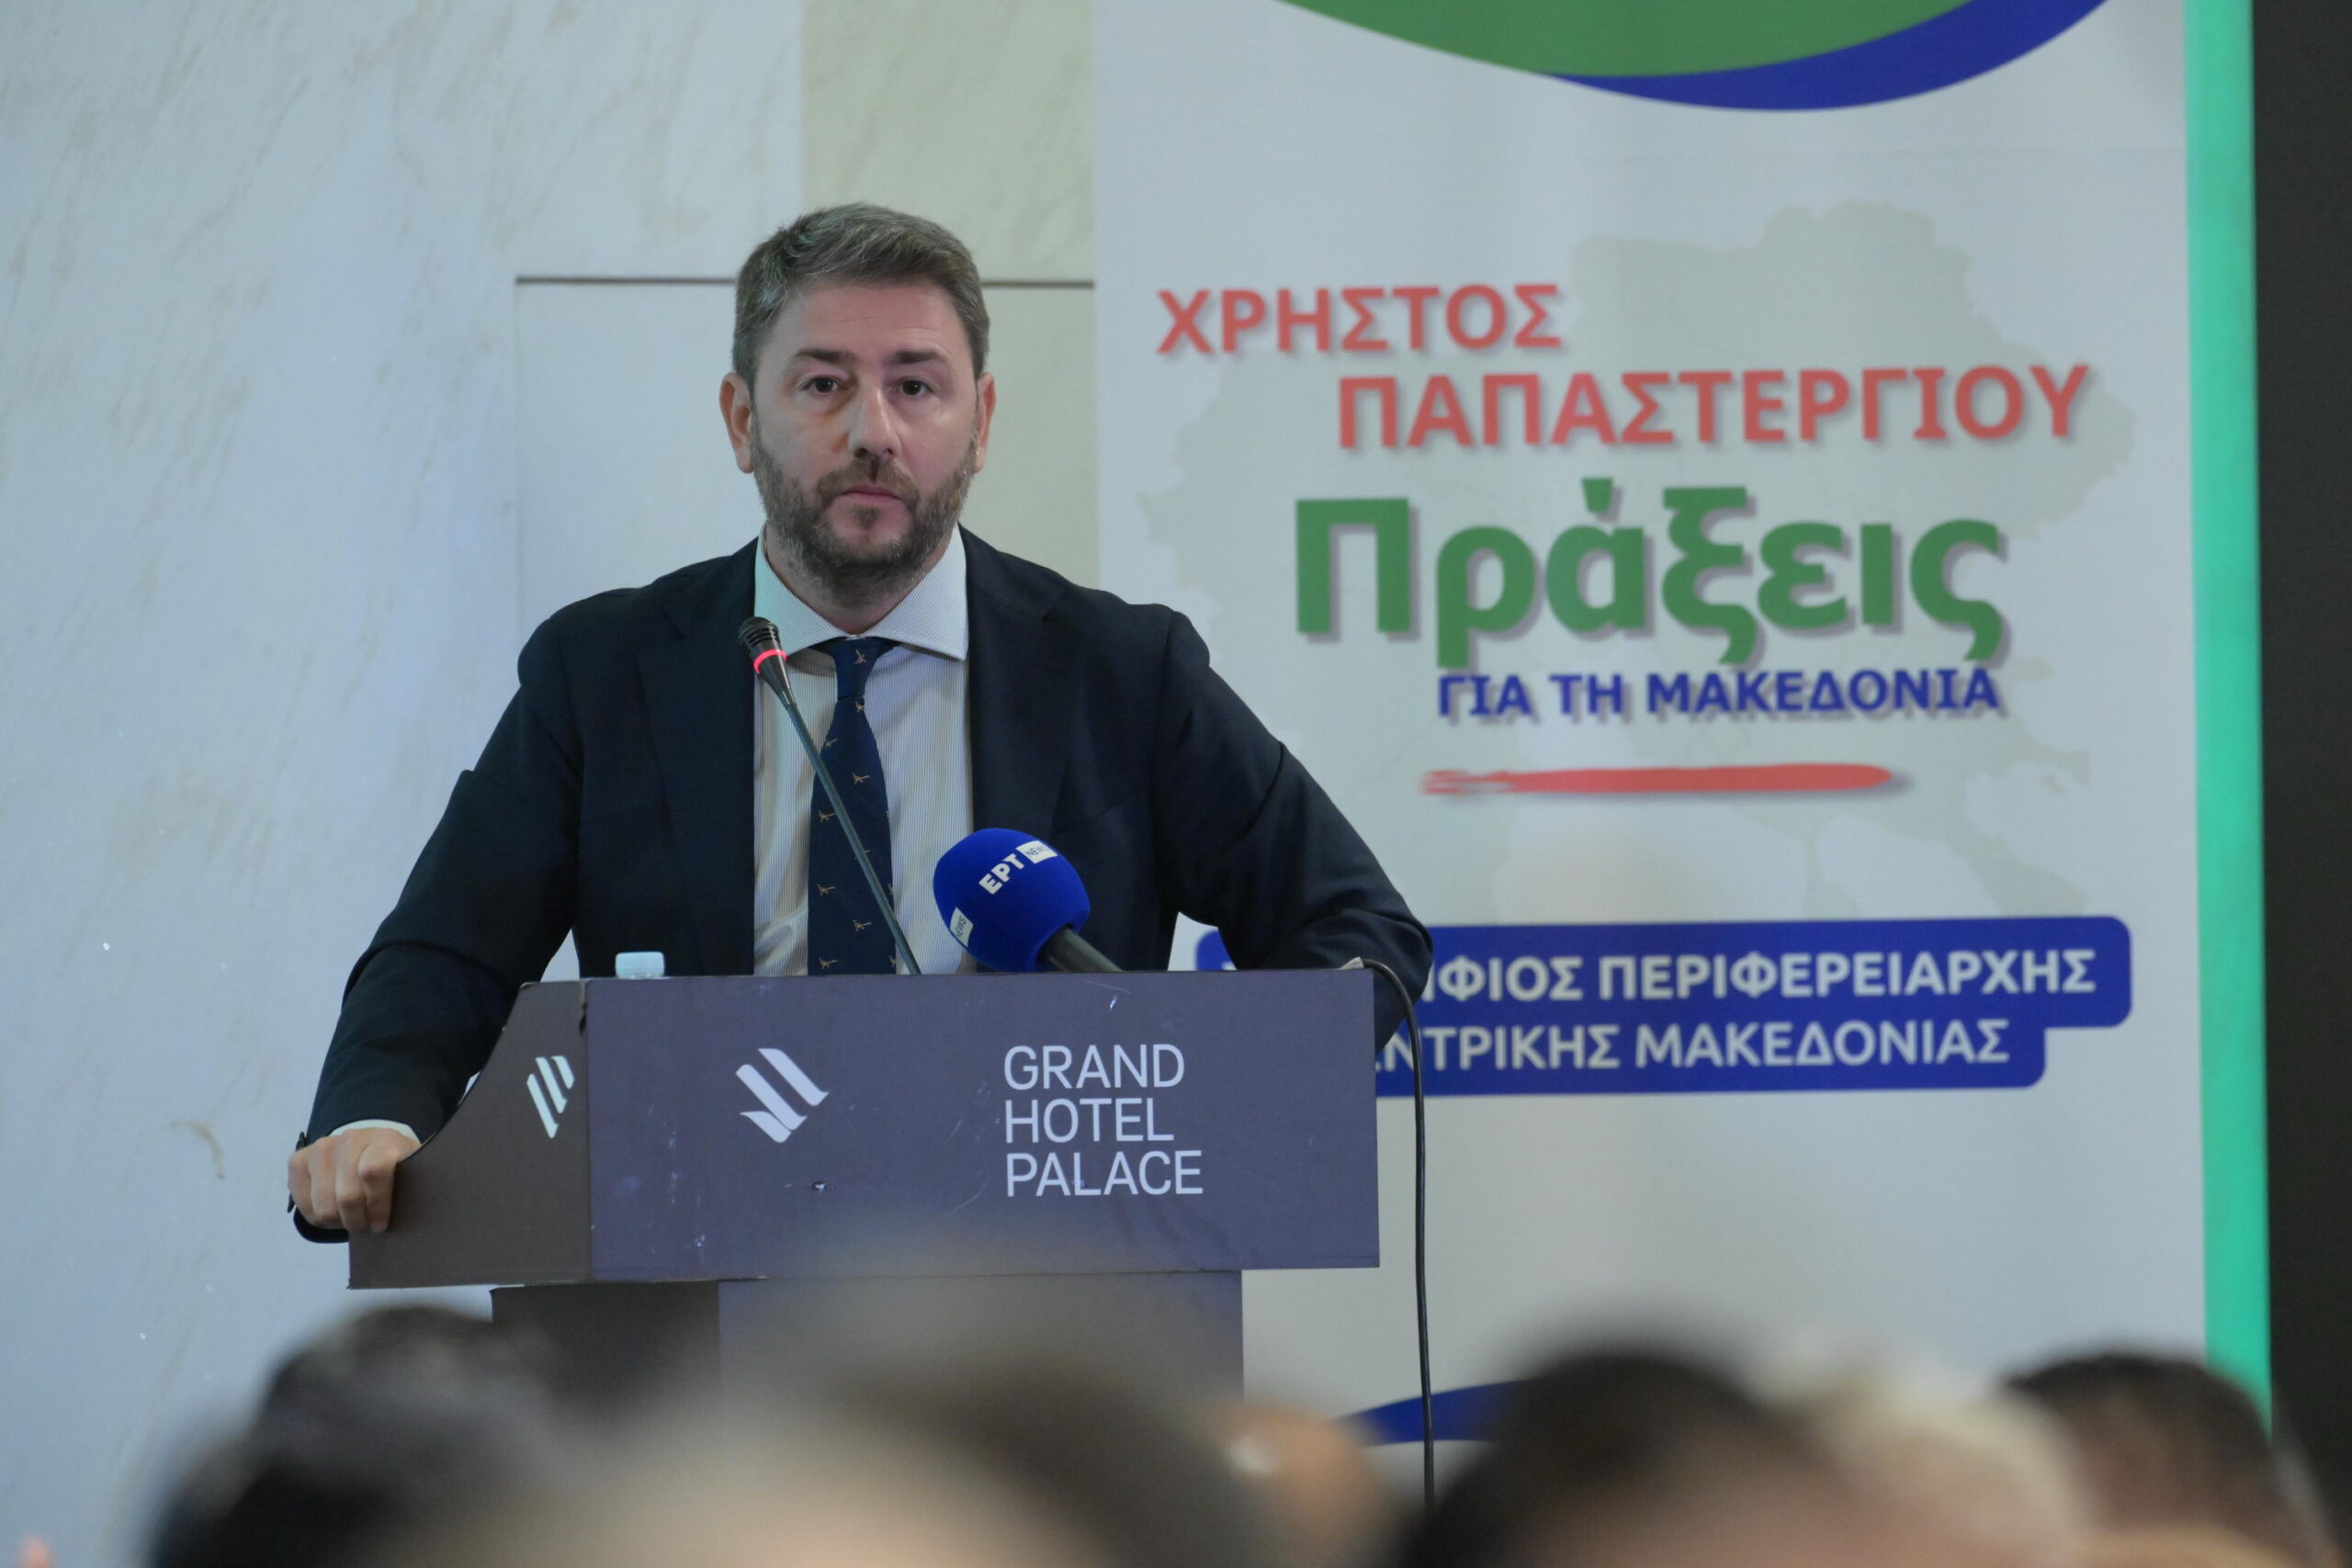 Ν. Ανδρουλάκης: «Αυτοδιοίκηση δίπλα στον πολίτη και όχι μακρύ χέρι της εξουσίας του εκάστοτε Πρωθυπουργού»